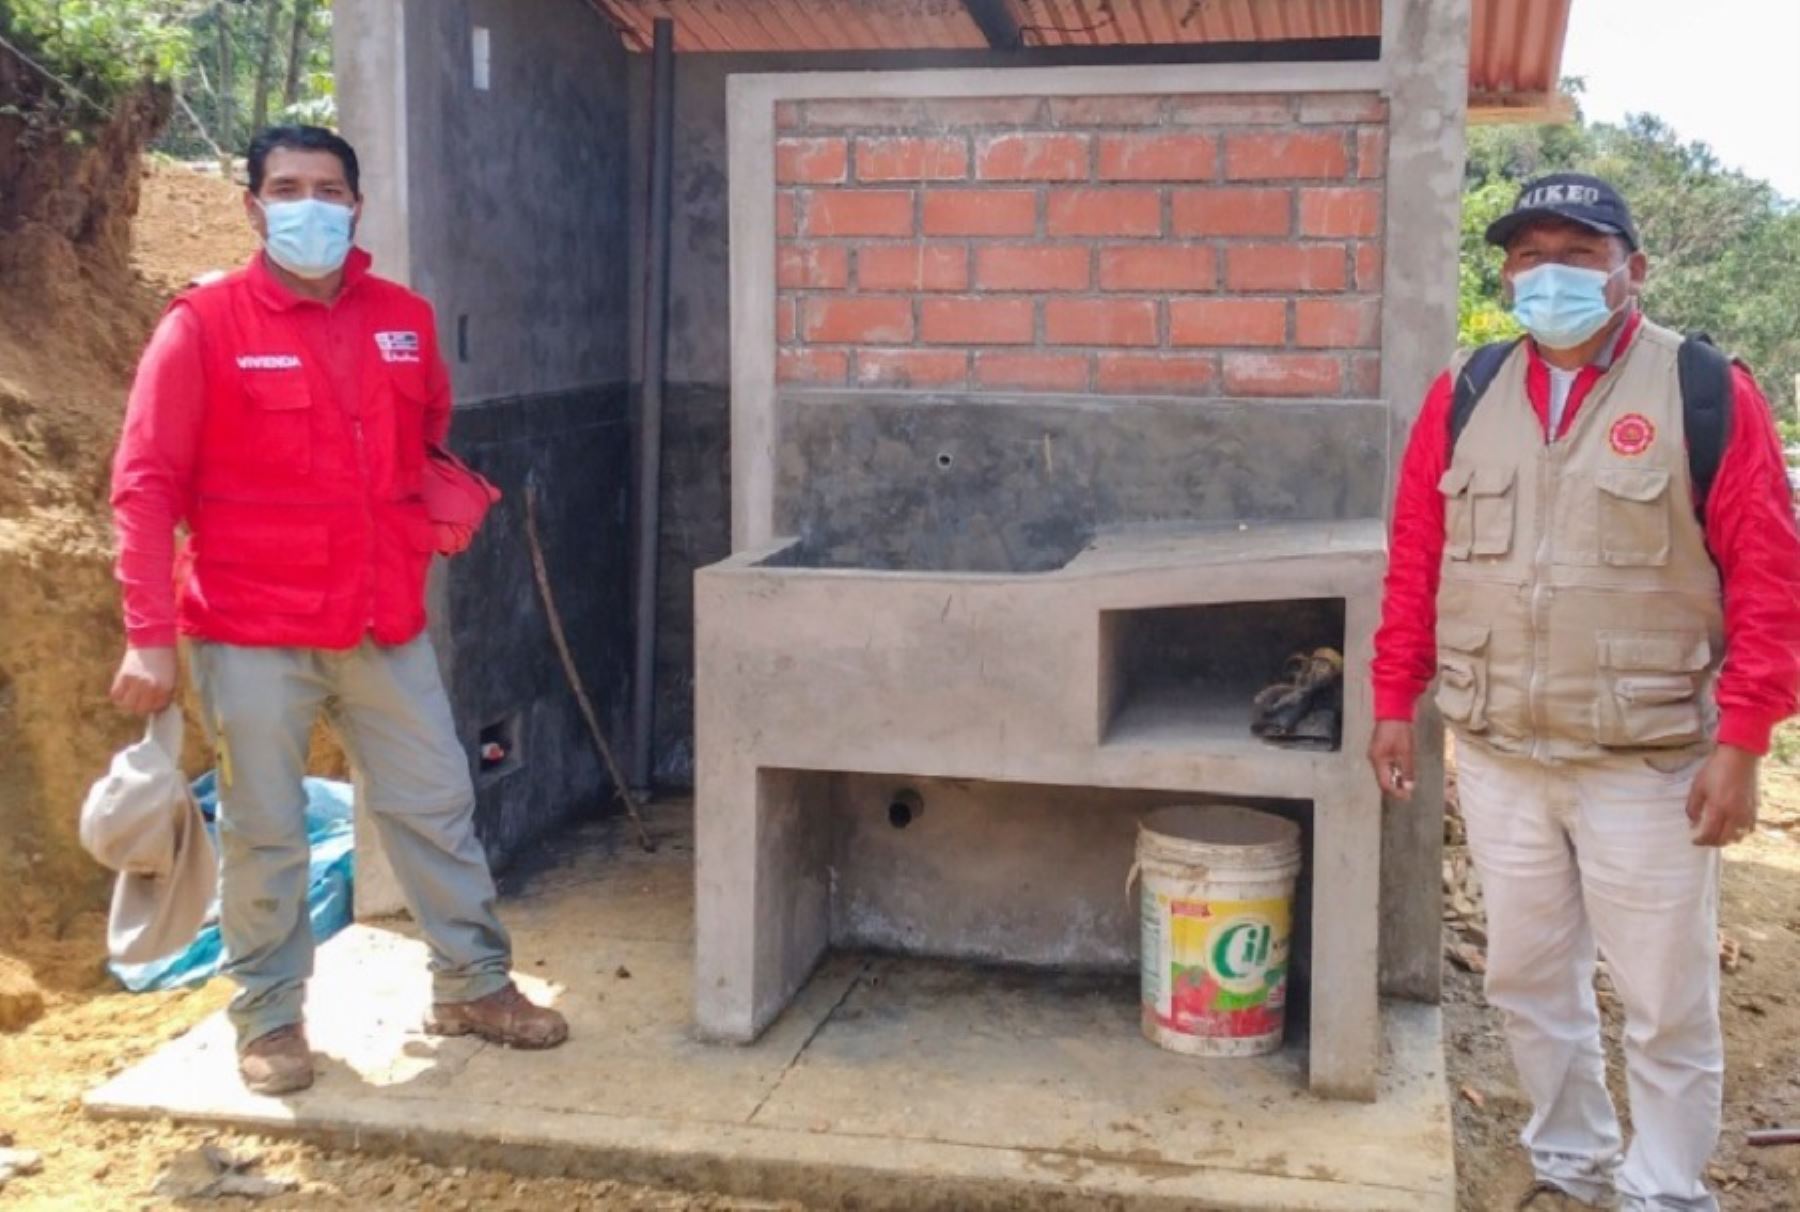 El Ministerio de Vivienda, Construcción y Saneamiento inició las obras de agua potable y saneamiento en el caserío El Trigal, ubicado en el distrito de Huarmaca, provincia de Huancabamba, región Piura, que tienen una inversión de S/ 4 millones 854 144.